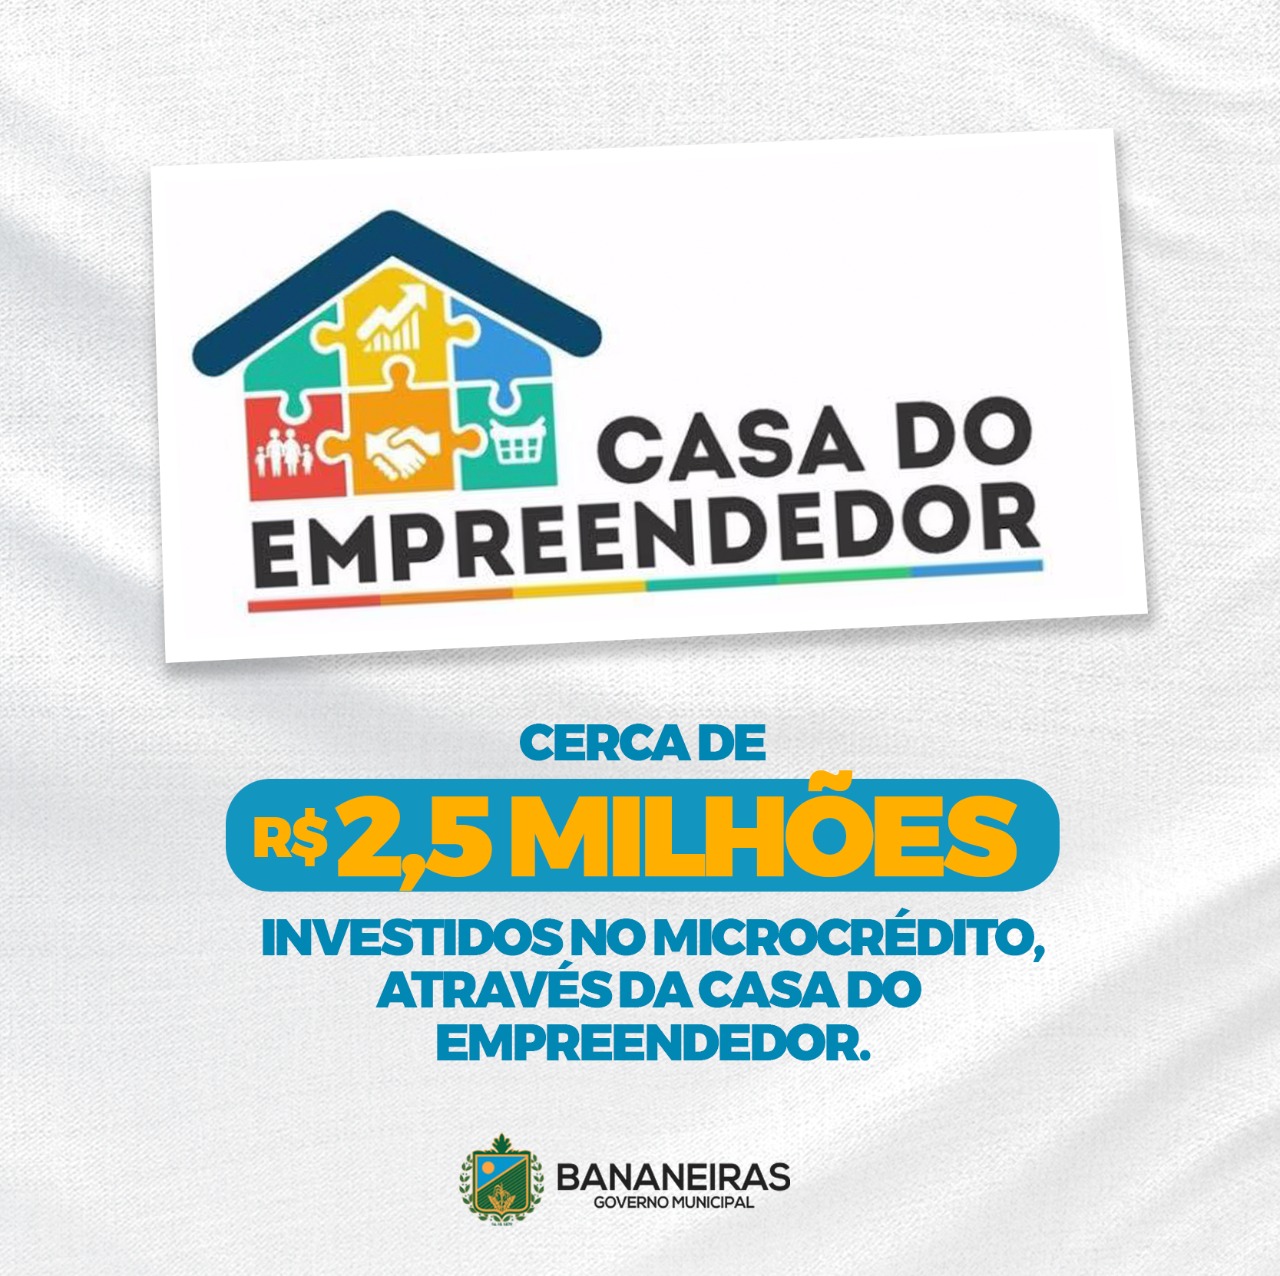 Casa do Empreendedor já investiu cerca de R$2,5 milhões de reais no microcrédito